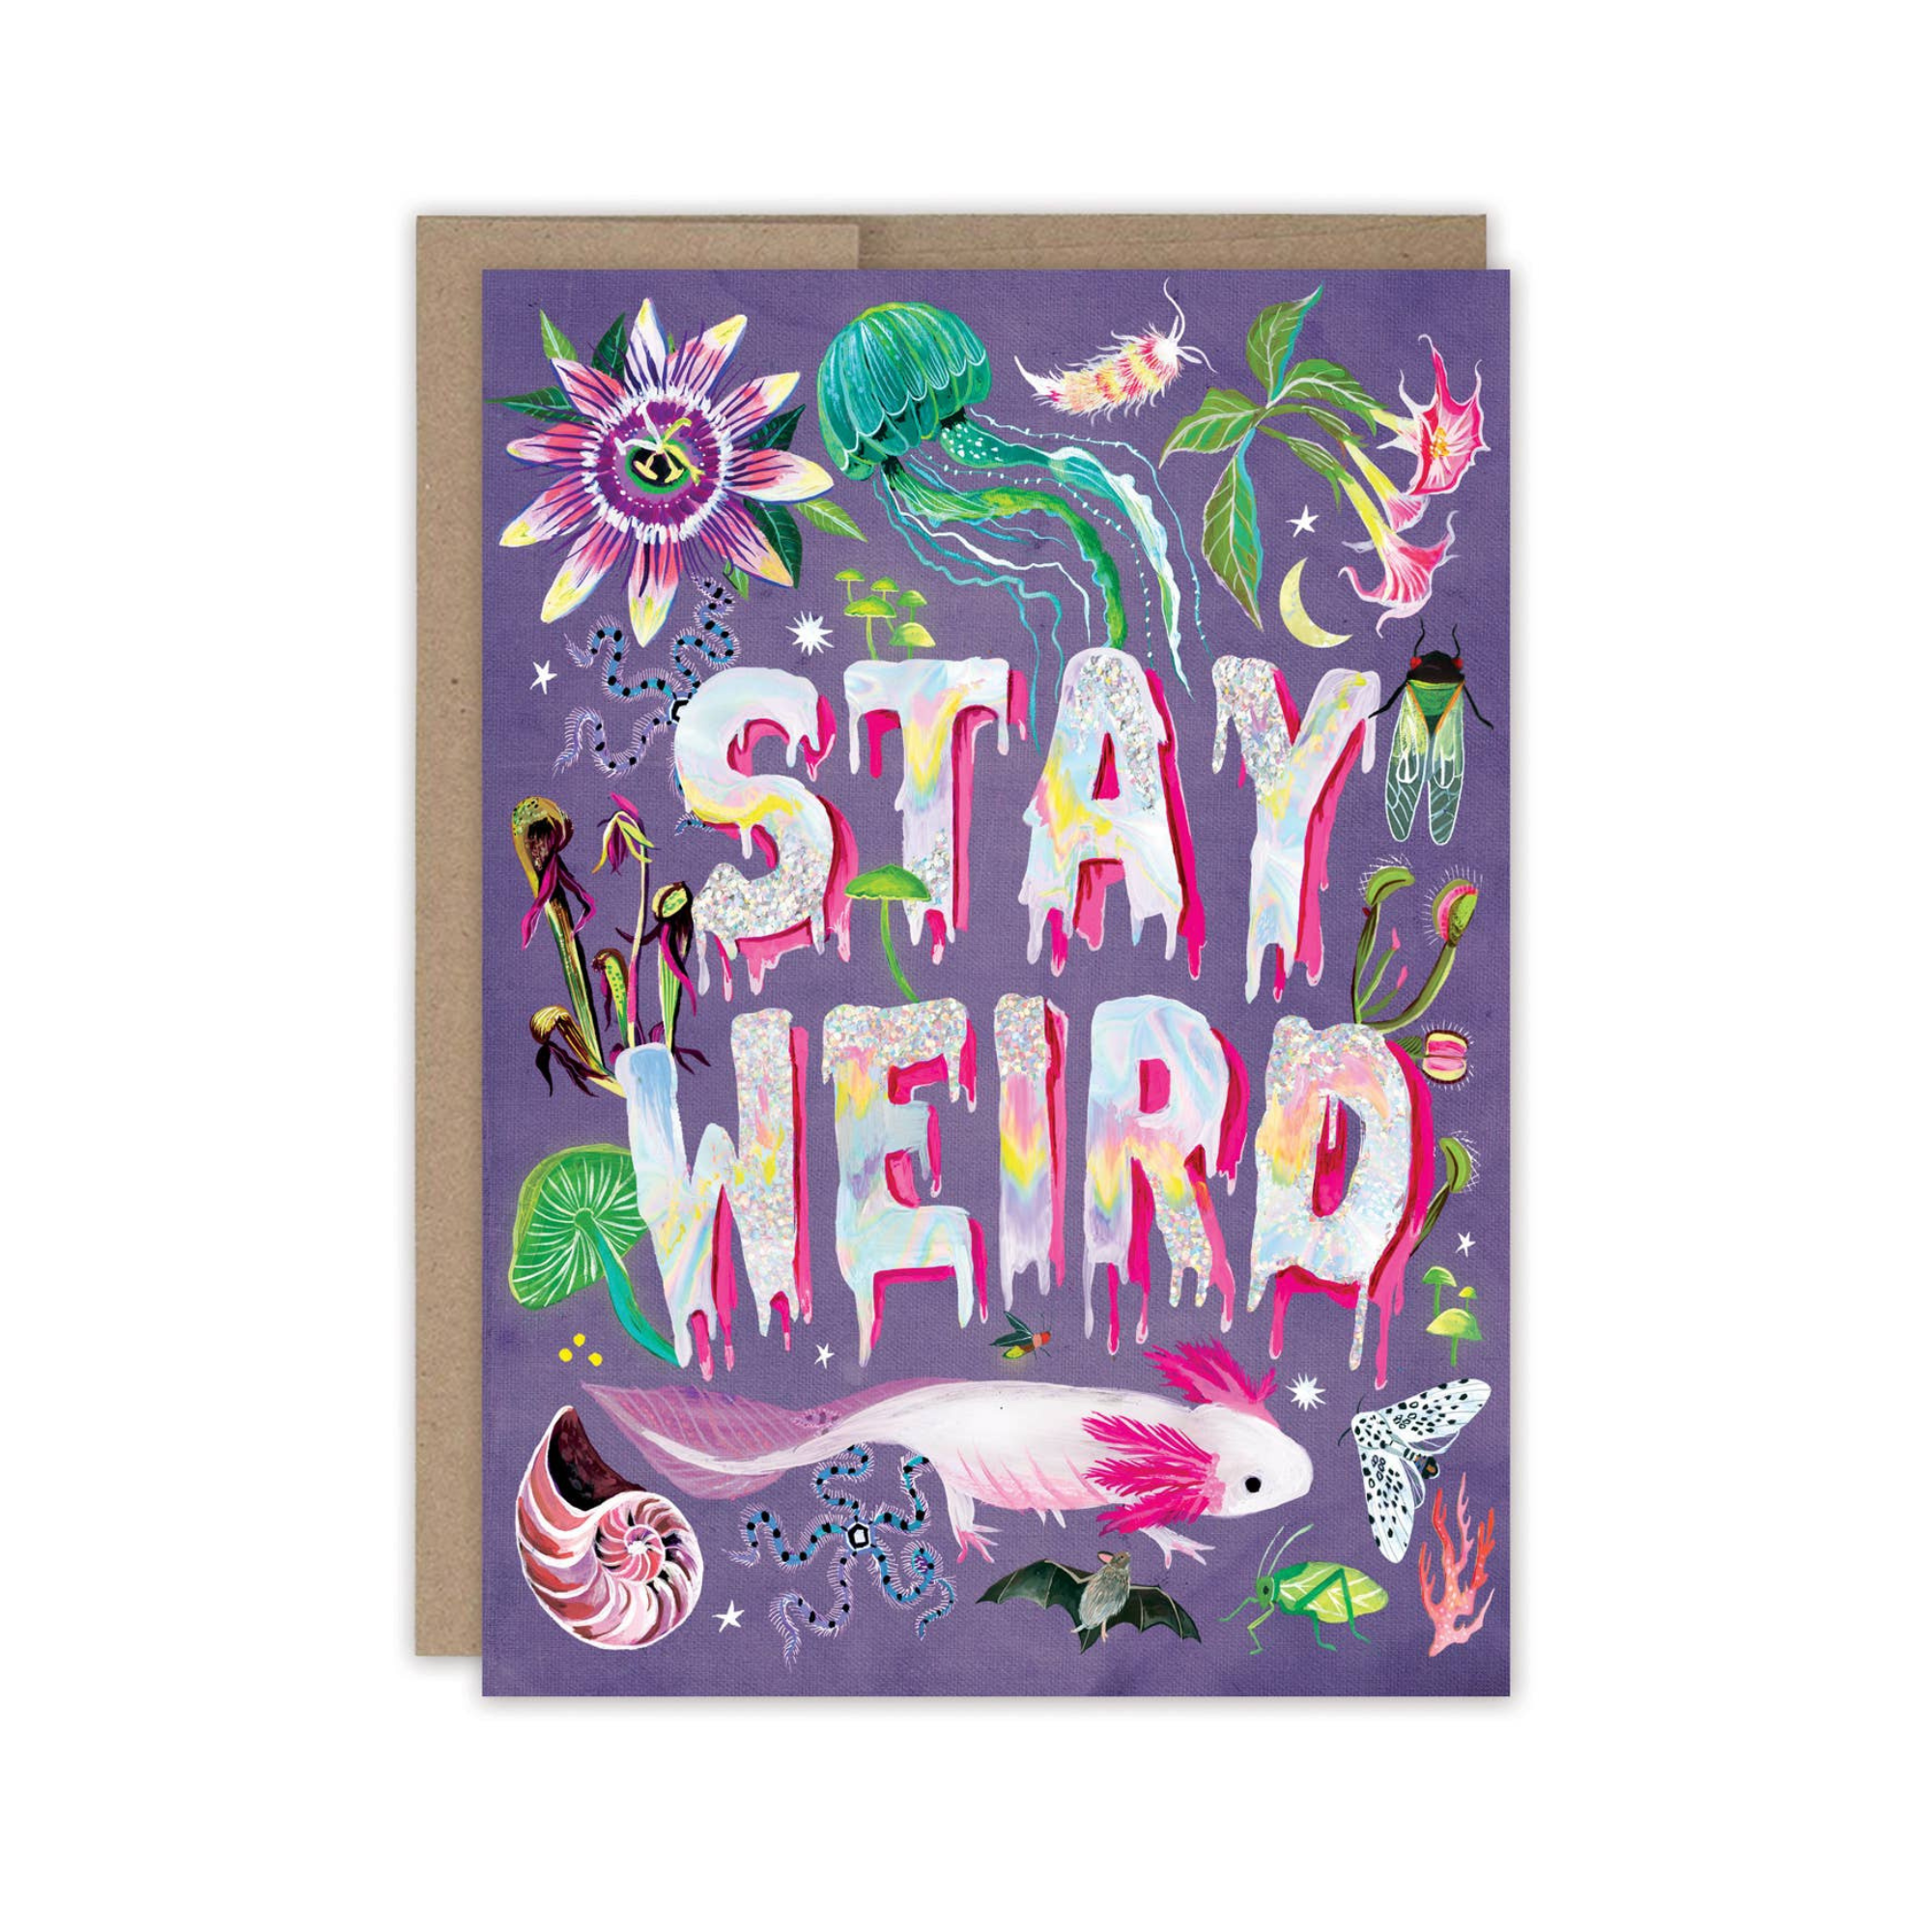 Stay Weird Birthday Card